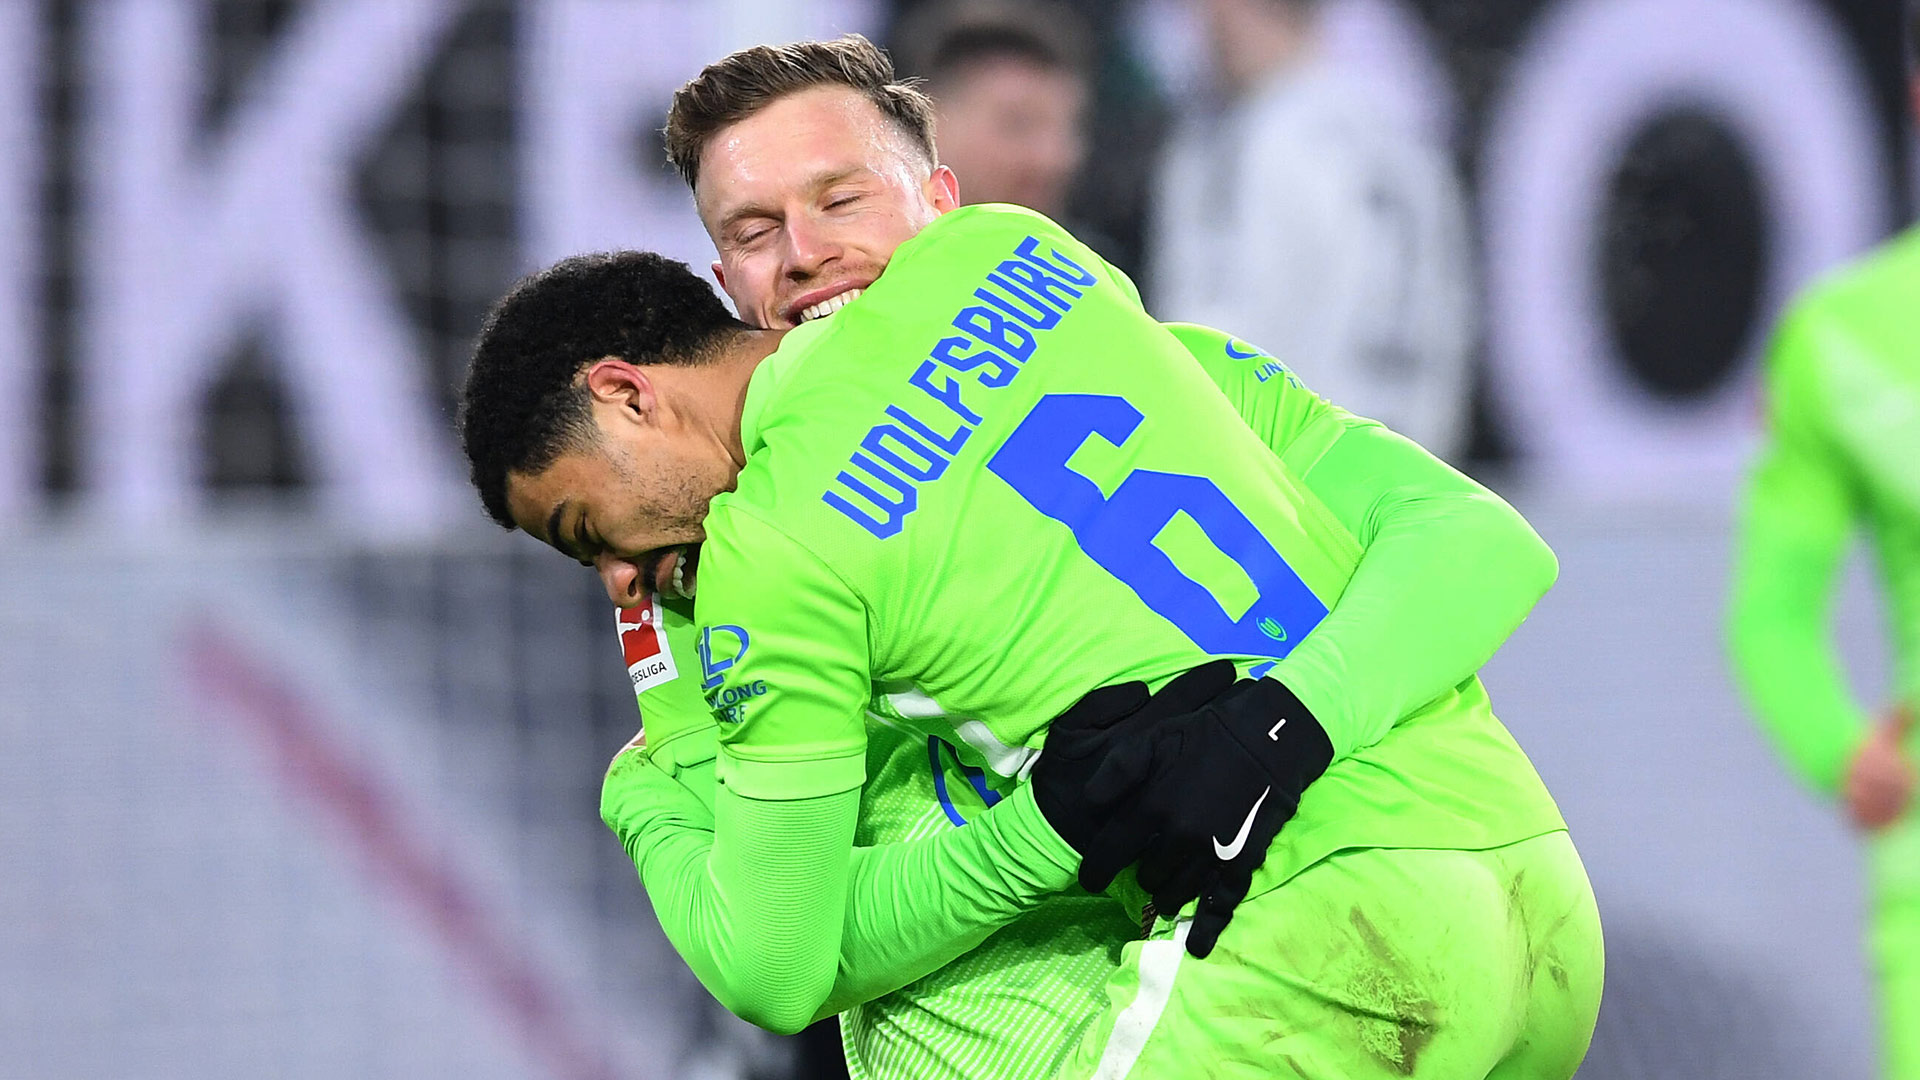 VfL Wolfsburgs Spieler Gerhardt und Otavio umarmen sich vor lauter Freude über das Tor von Gerhardt.